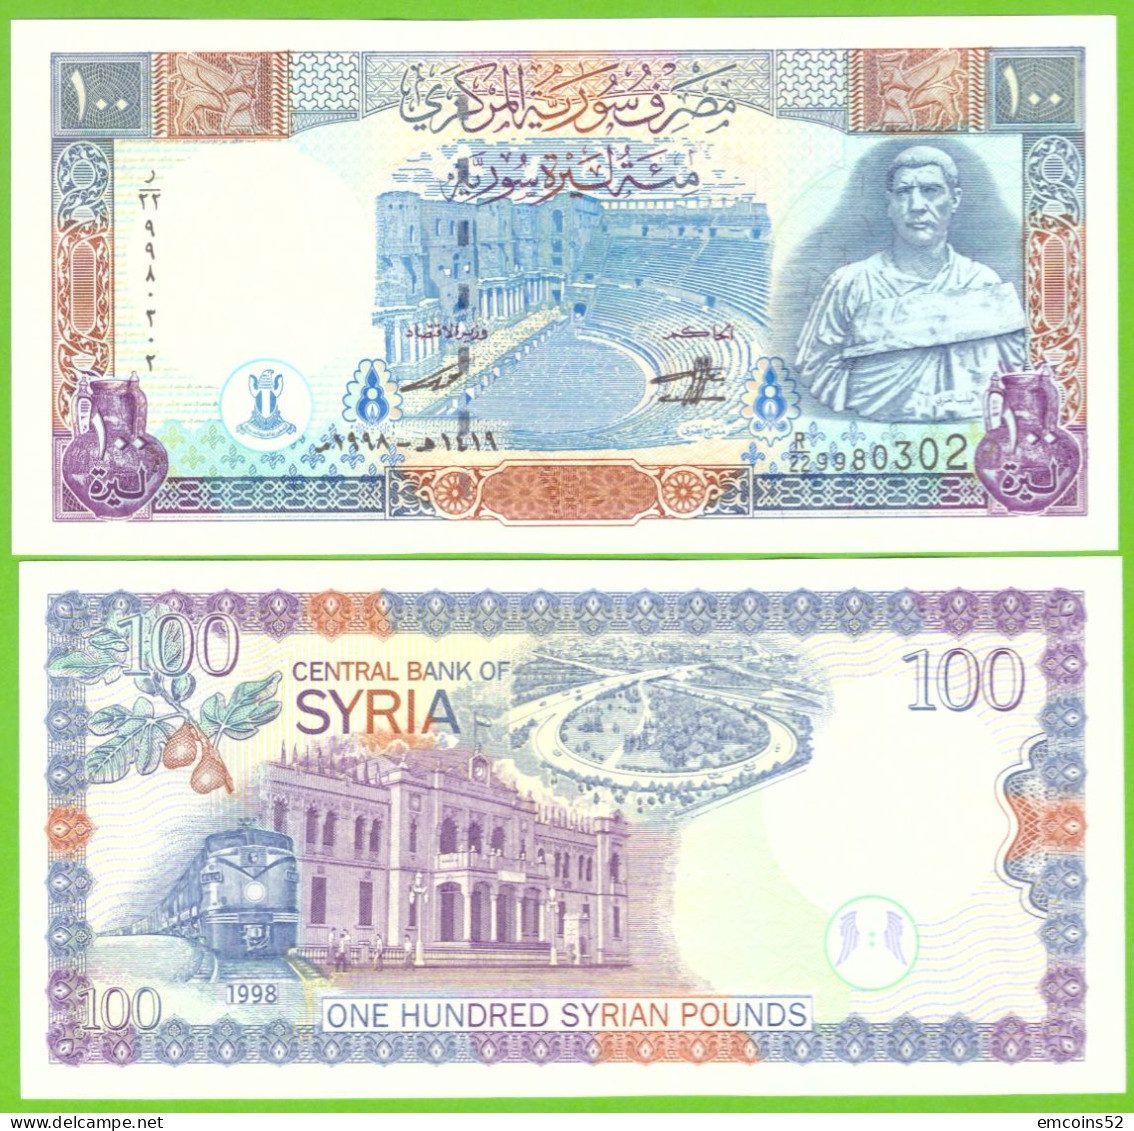 SYRIA 100 POUNDS 1998 P-108 UNC - Syria